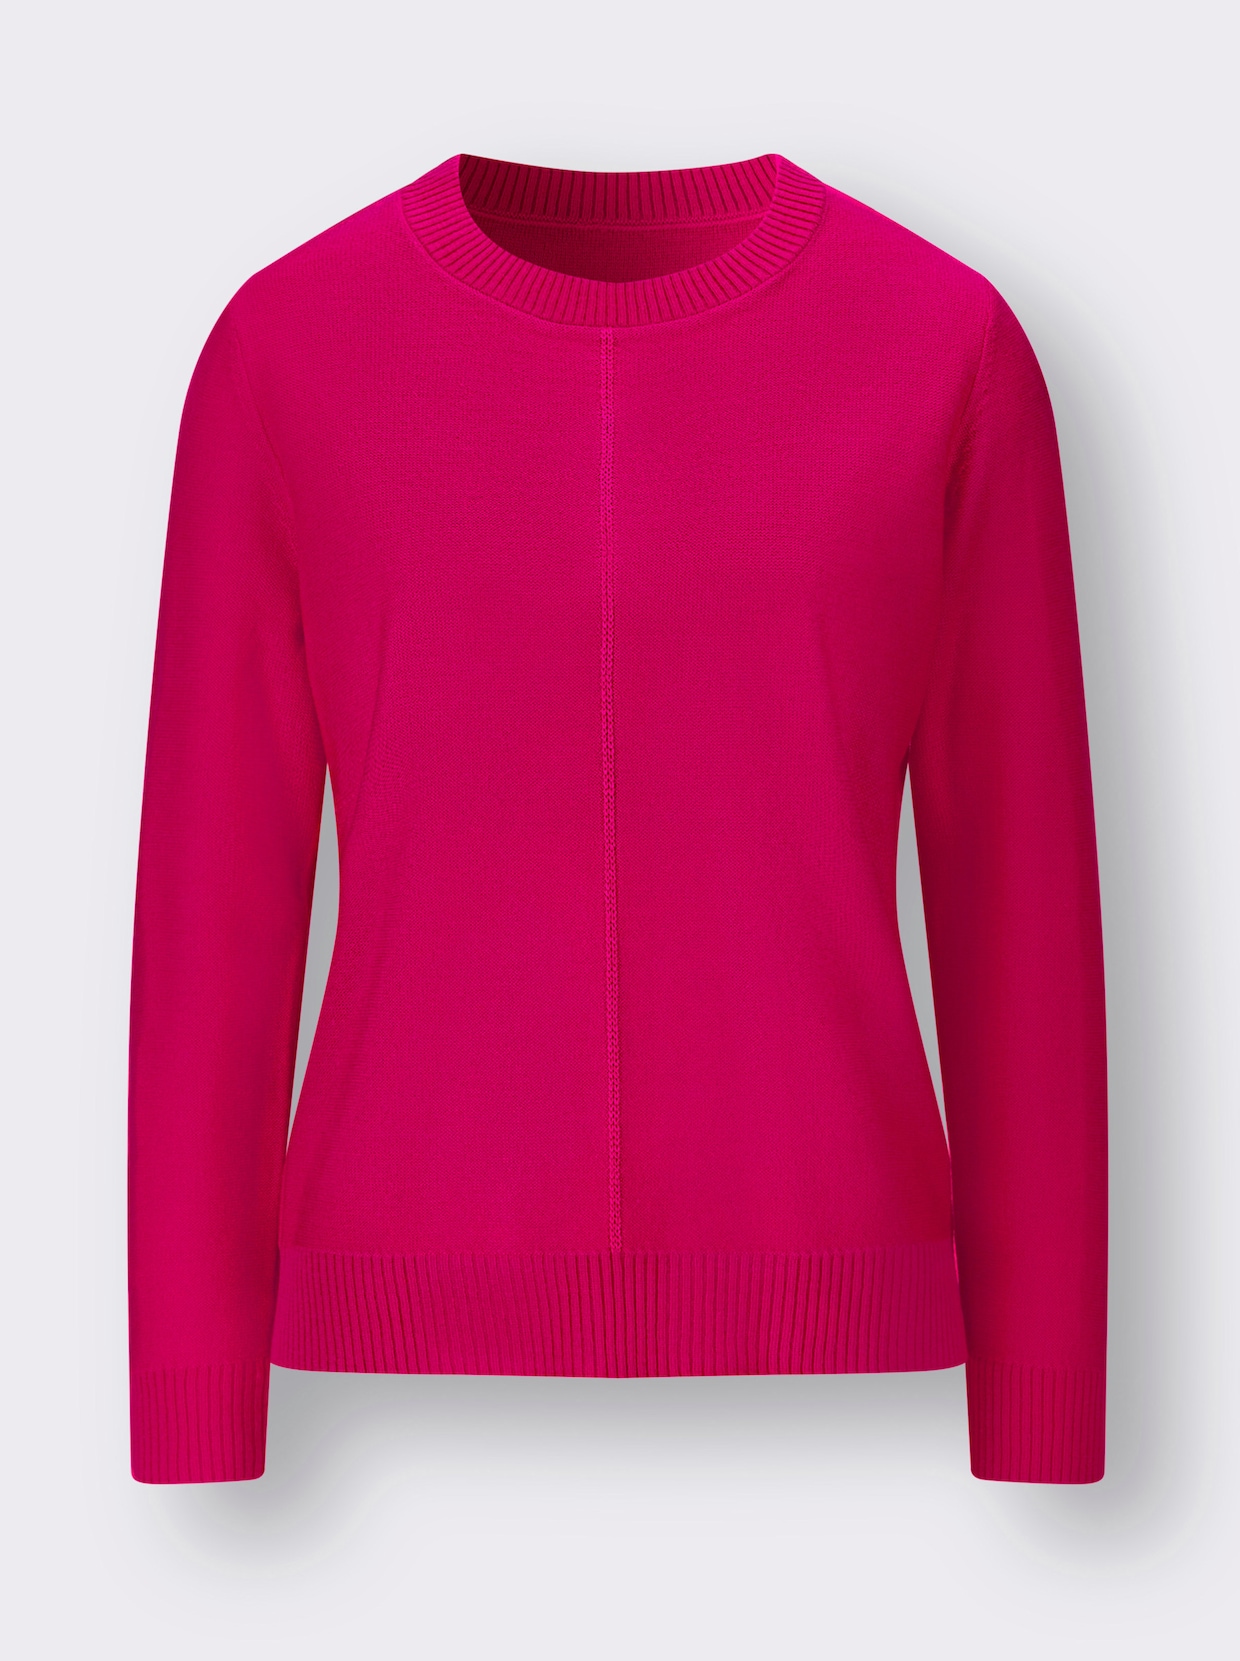 Langarm-Pullover - pink